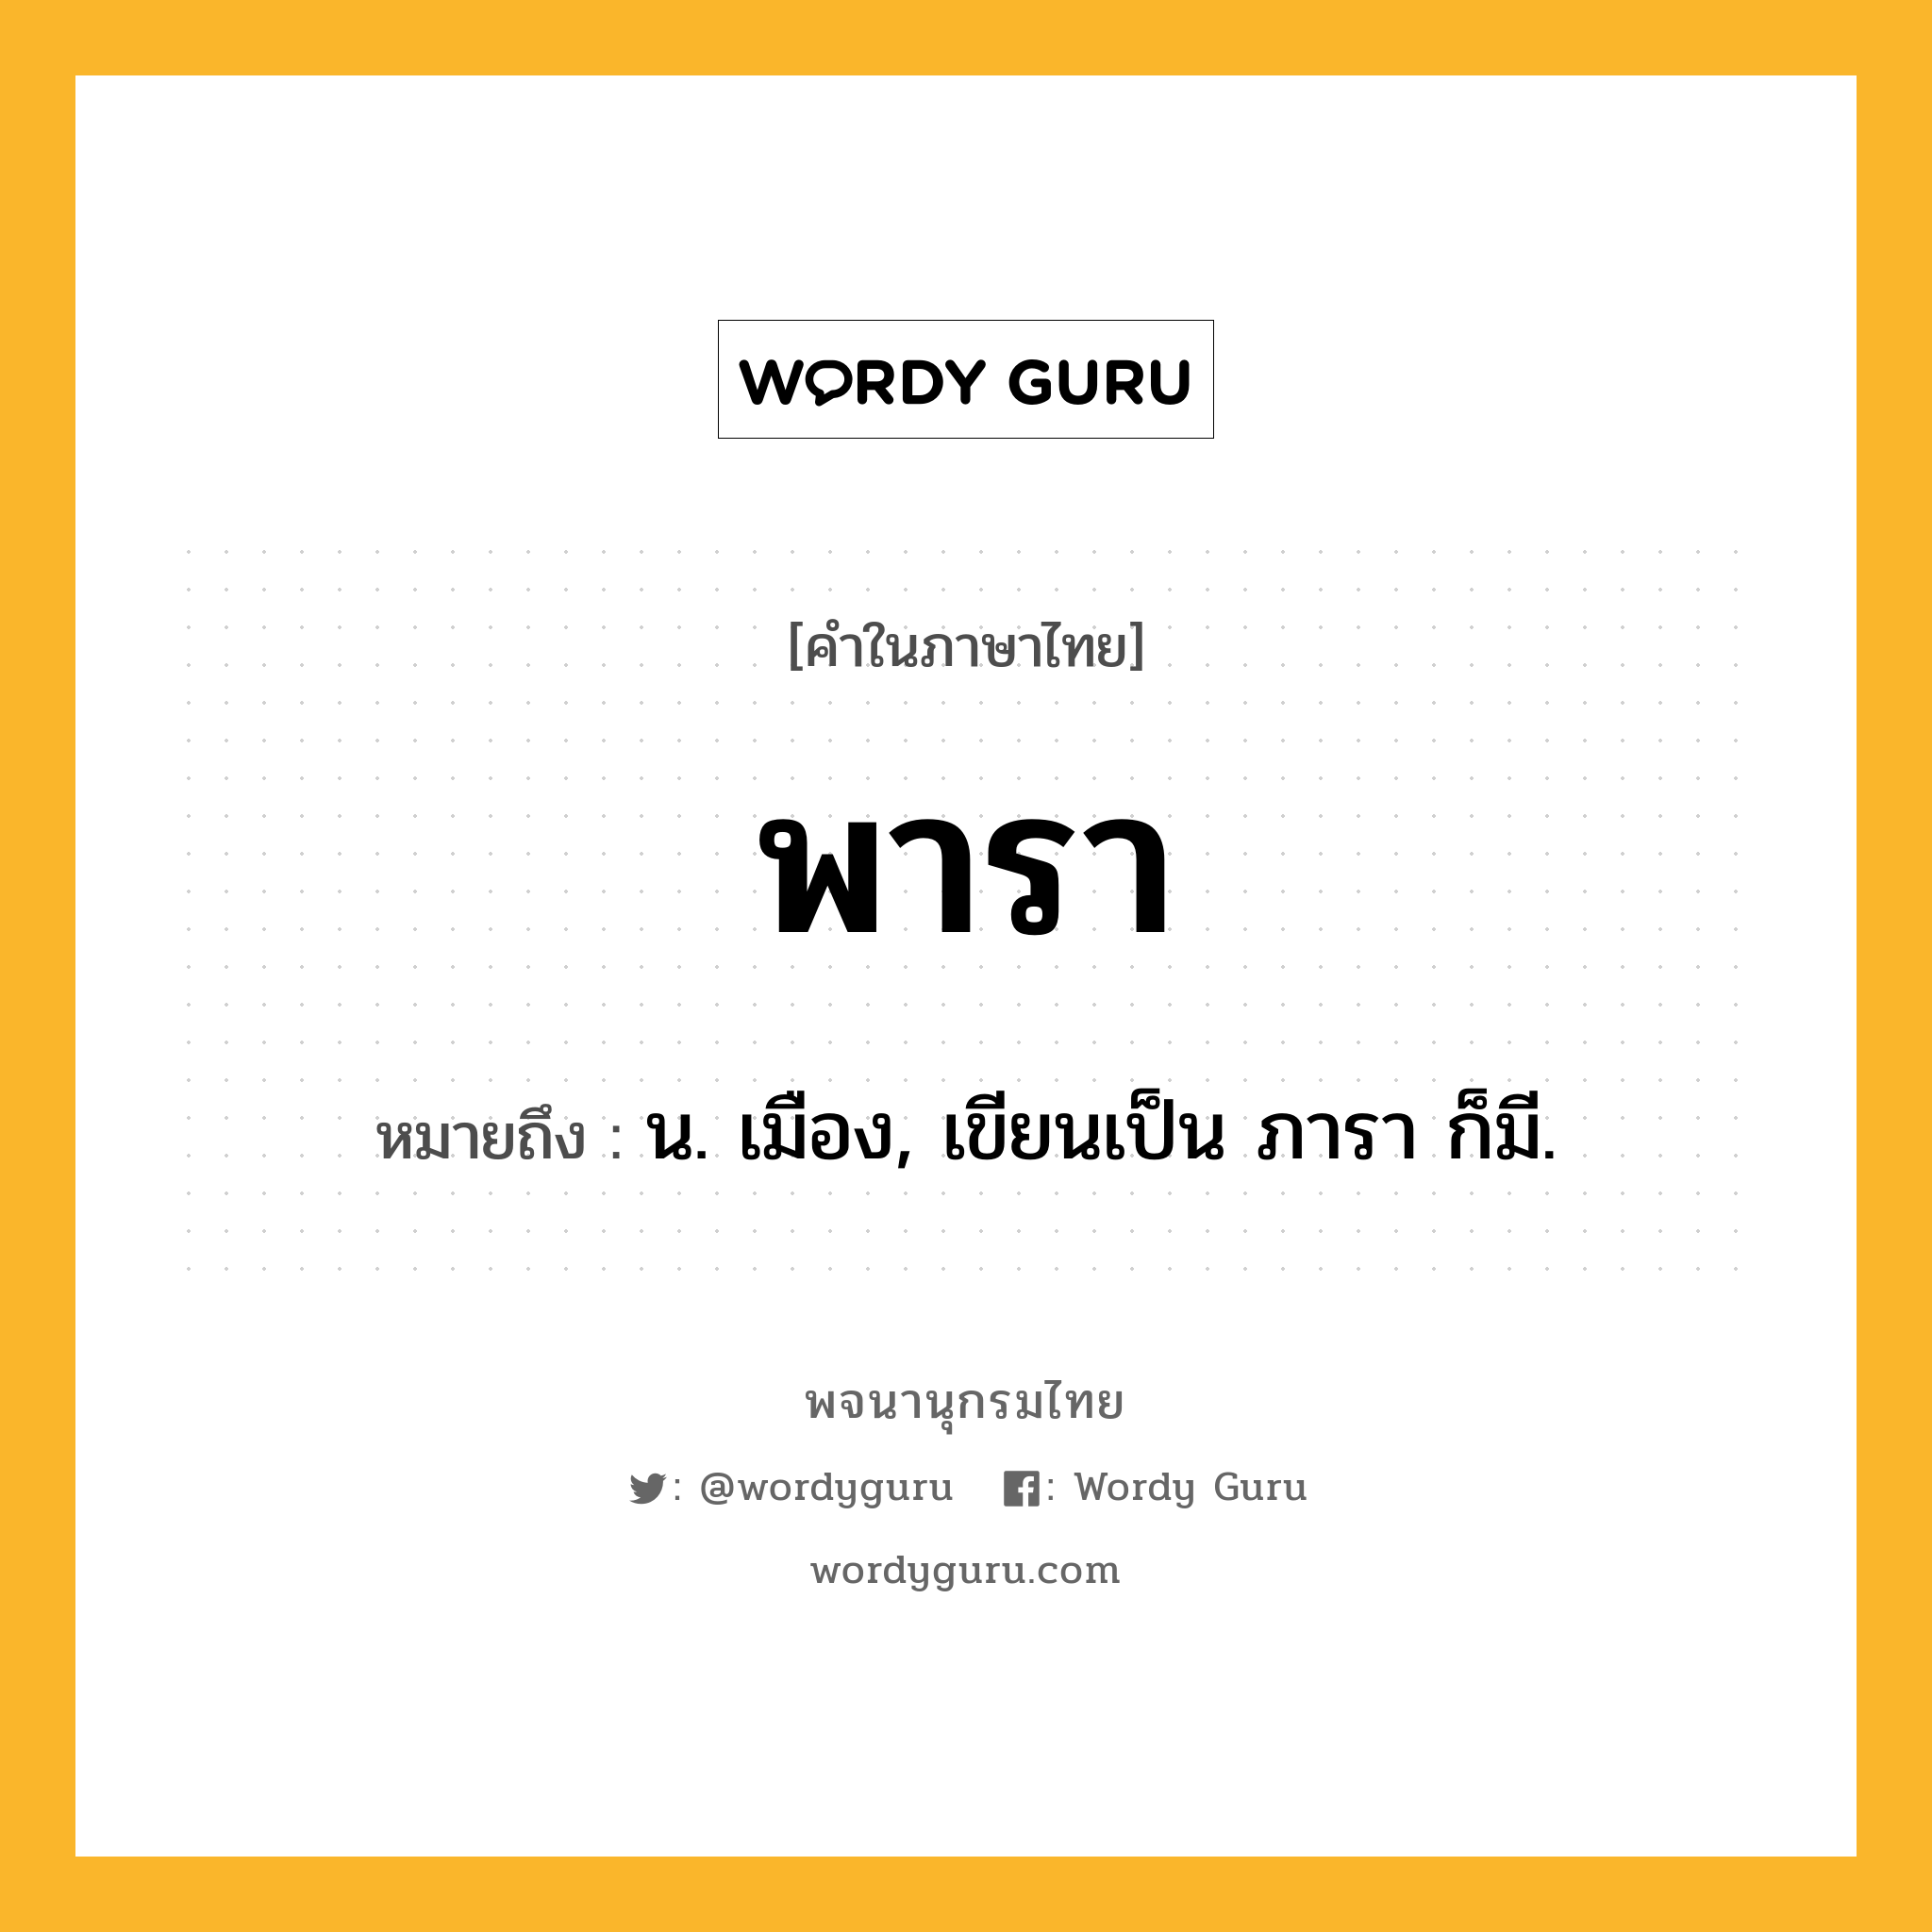 พารา ความหมาย หมายถึงอะไร?, คำในภาษาไทย พารา หมายถึง น. เมือง, เขียนเป็น ภารา ก็มี.